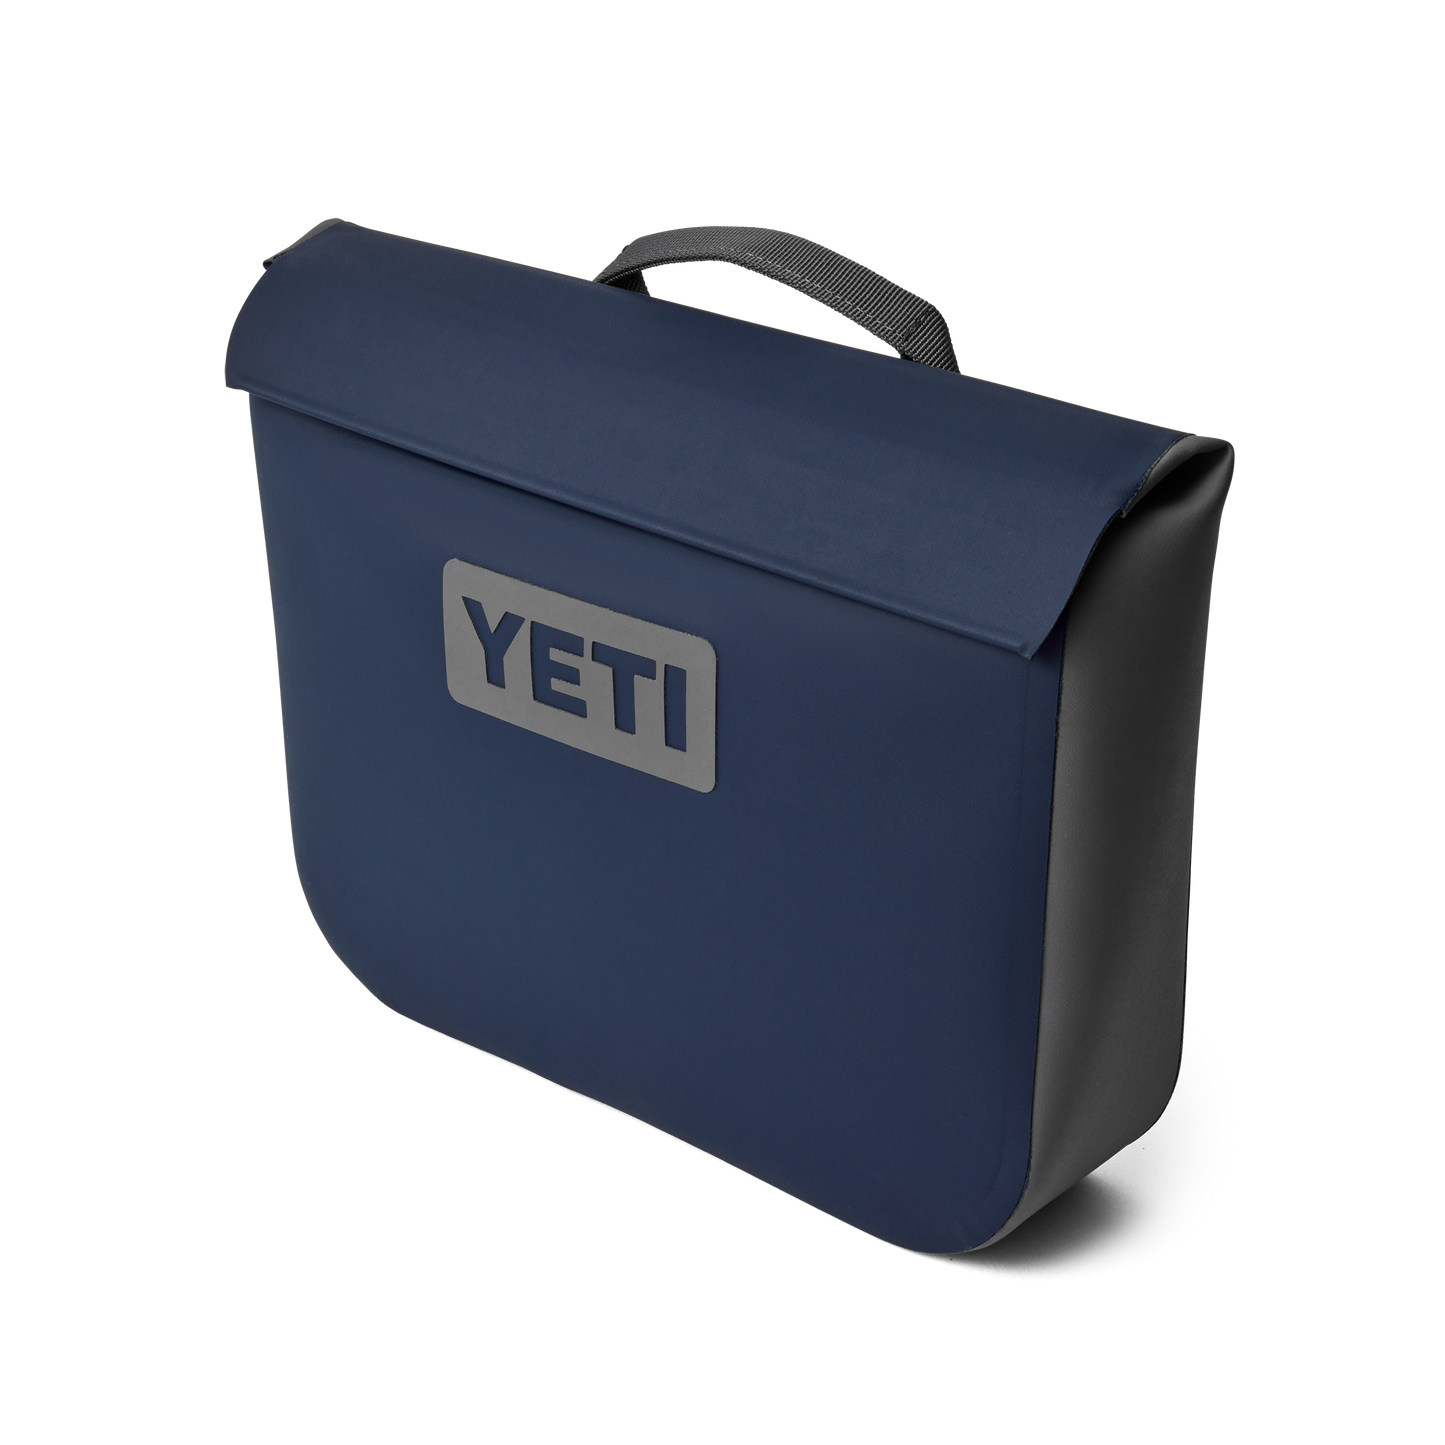  YETI Sidekick Dry® 6L Gear Case Navy